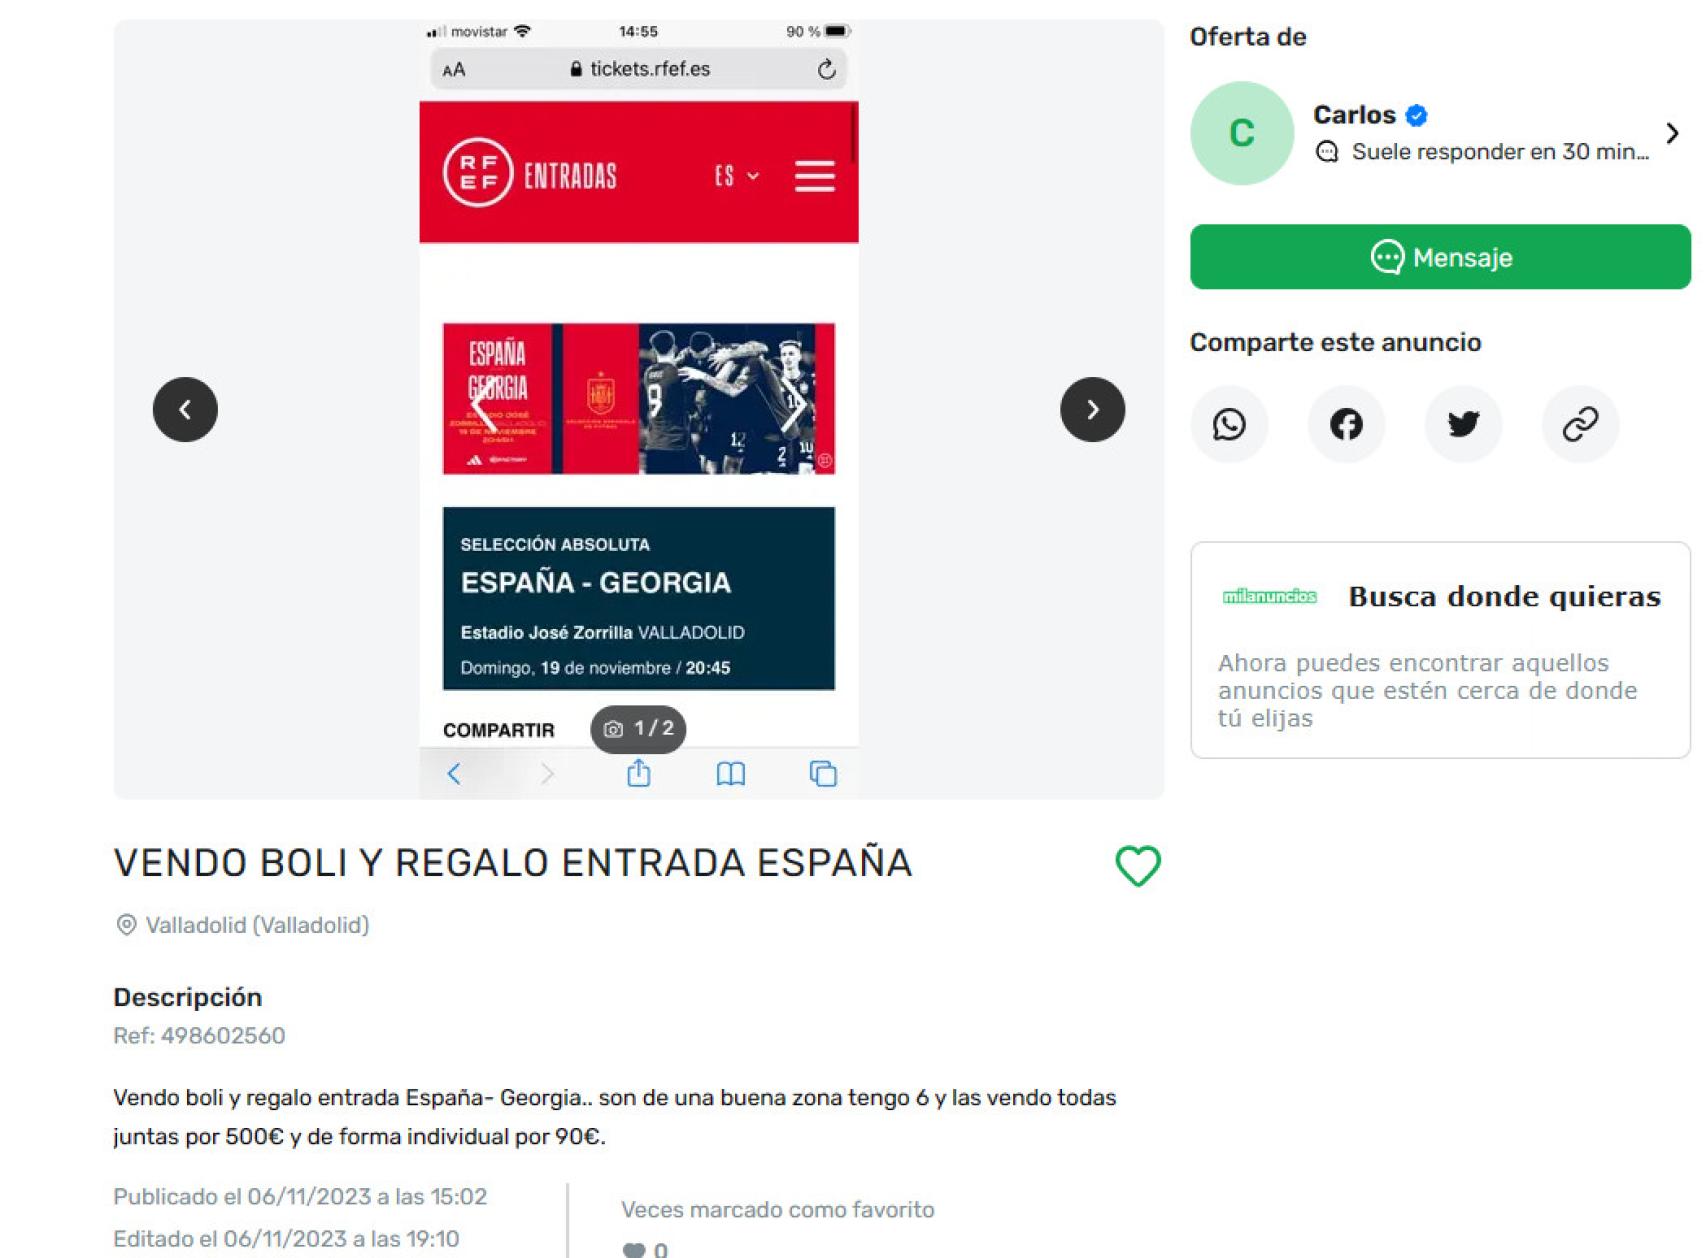 Oferta en milanuncios.com para comprar un boli que incluye entradas de regalo para el partido de España en Valladolid